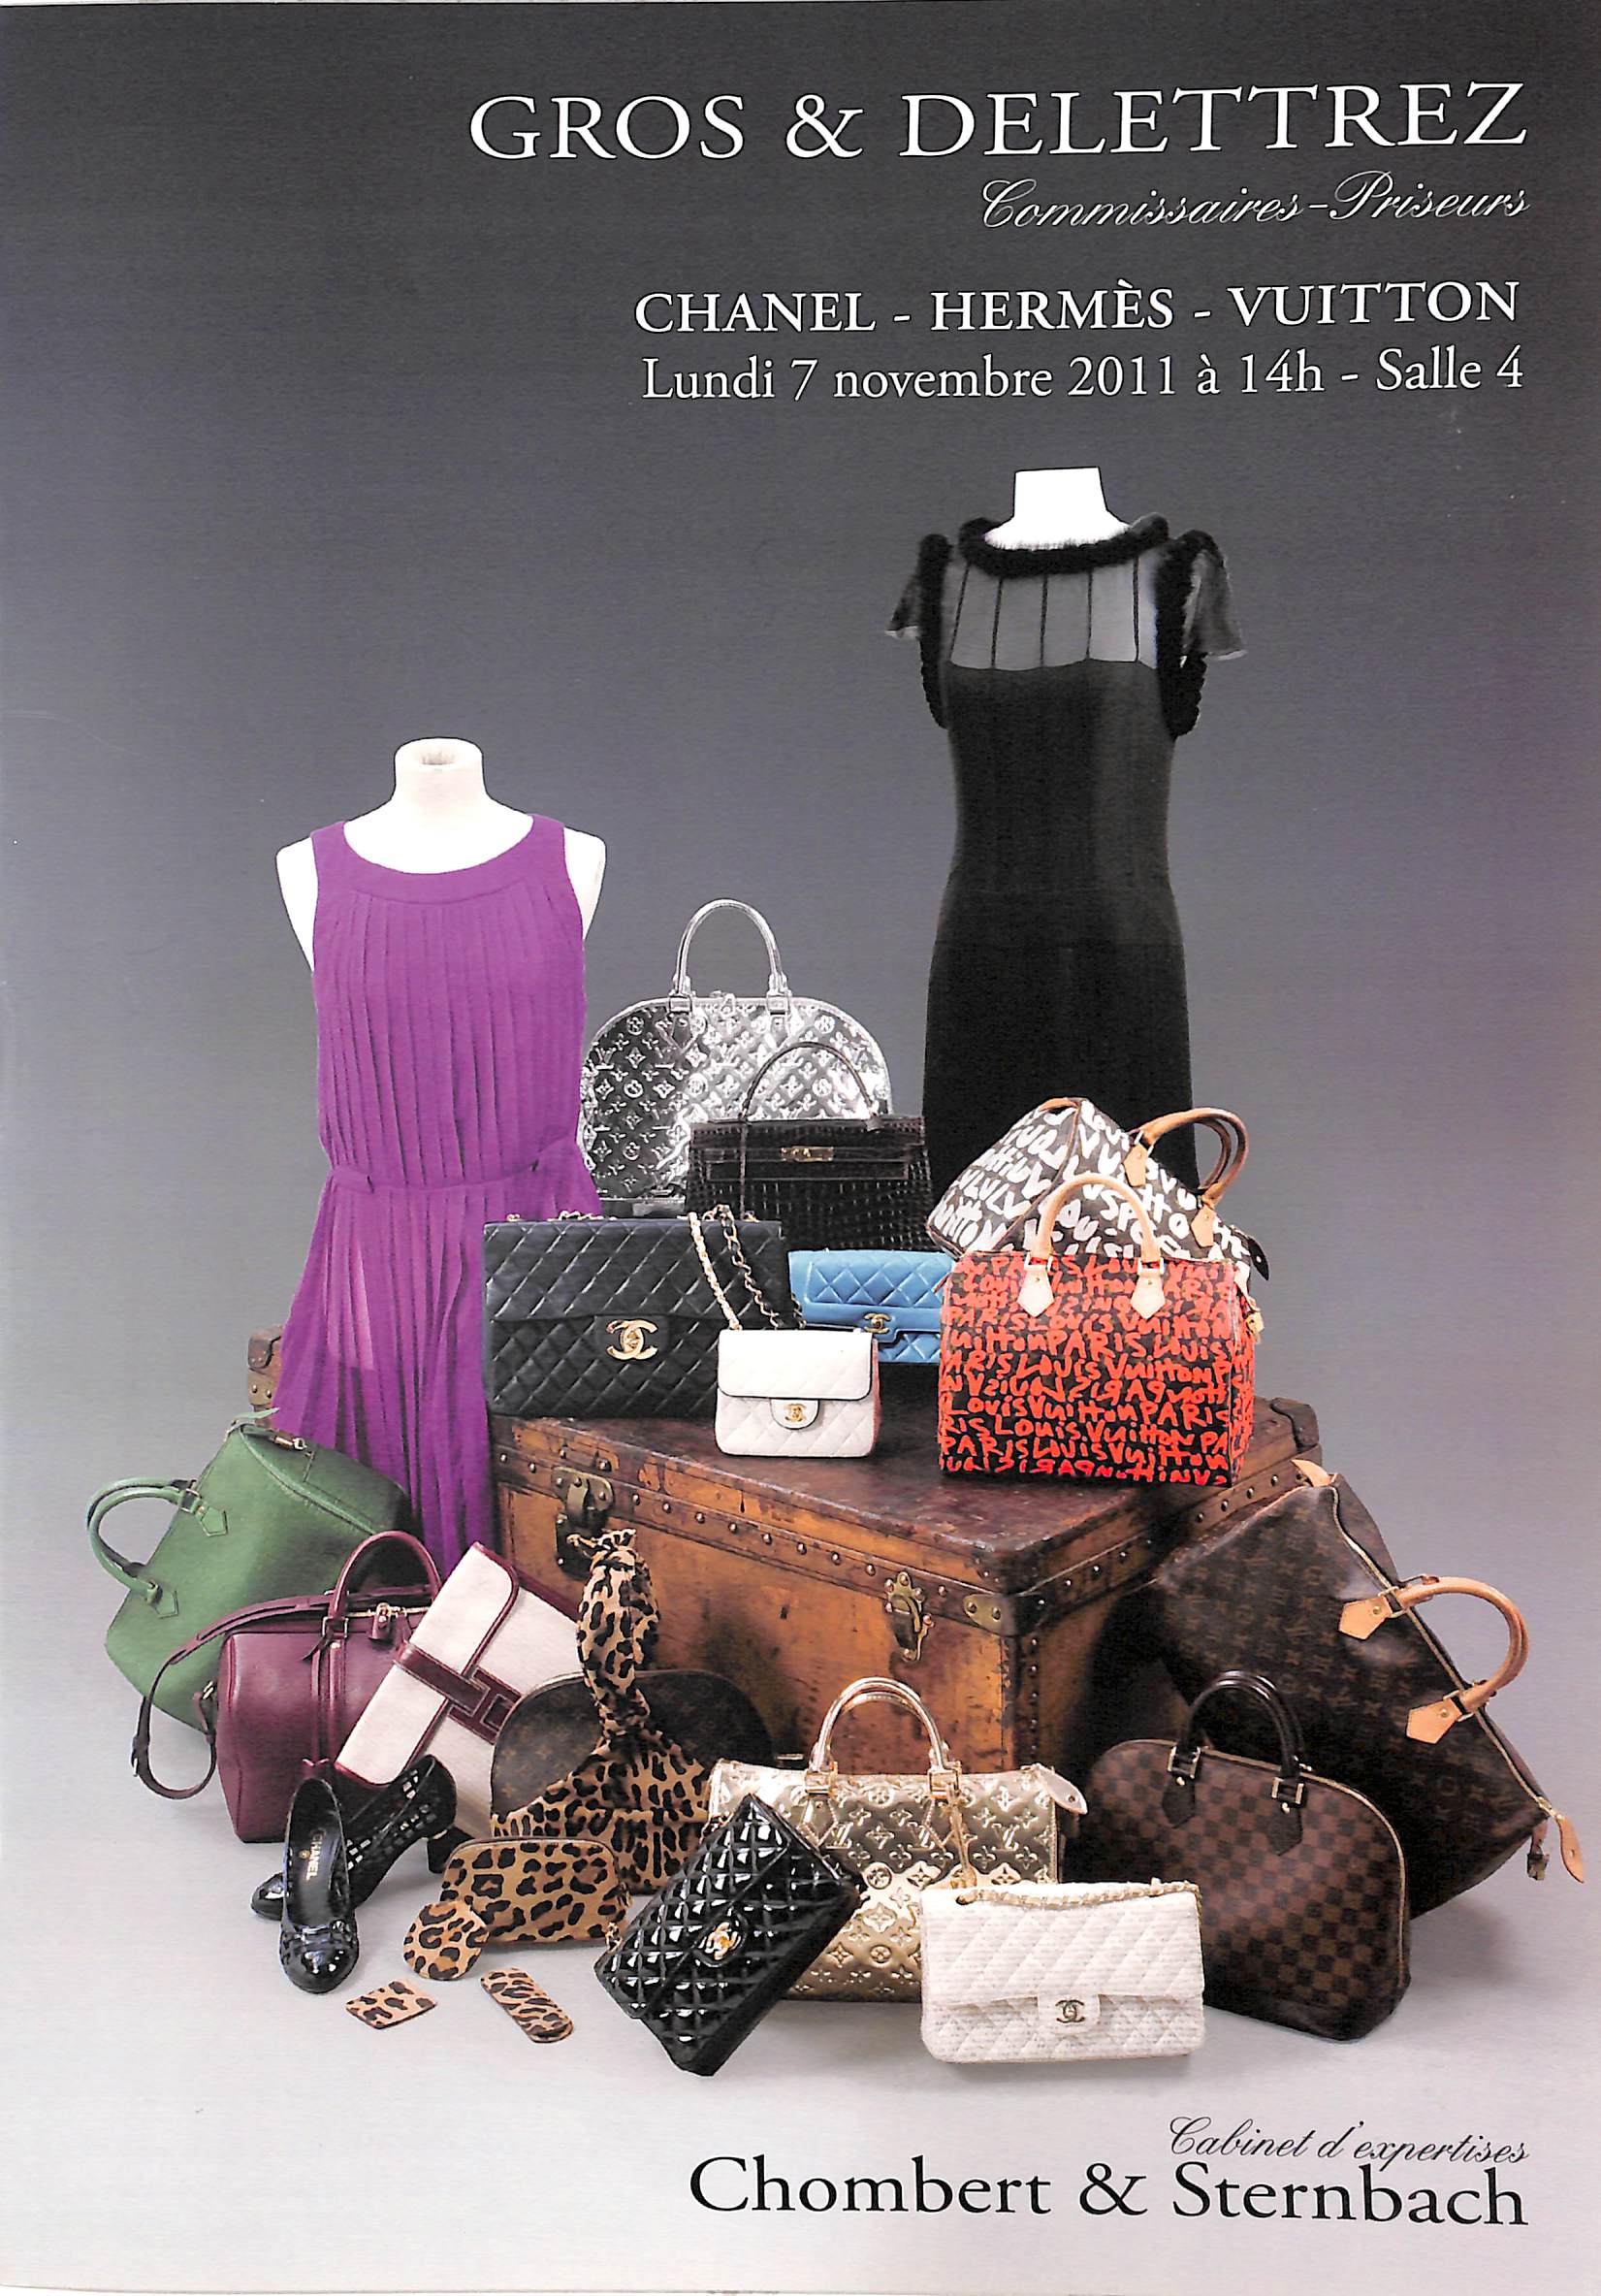 Louis Vuitton (Malletier a Paris): Le Catalogue by Louis Vuitton